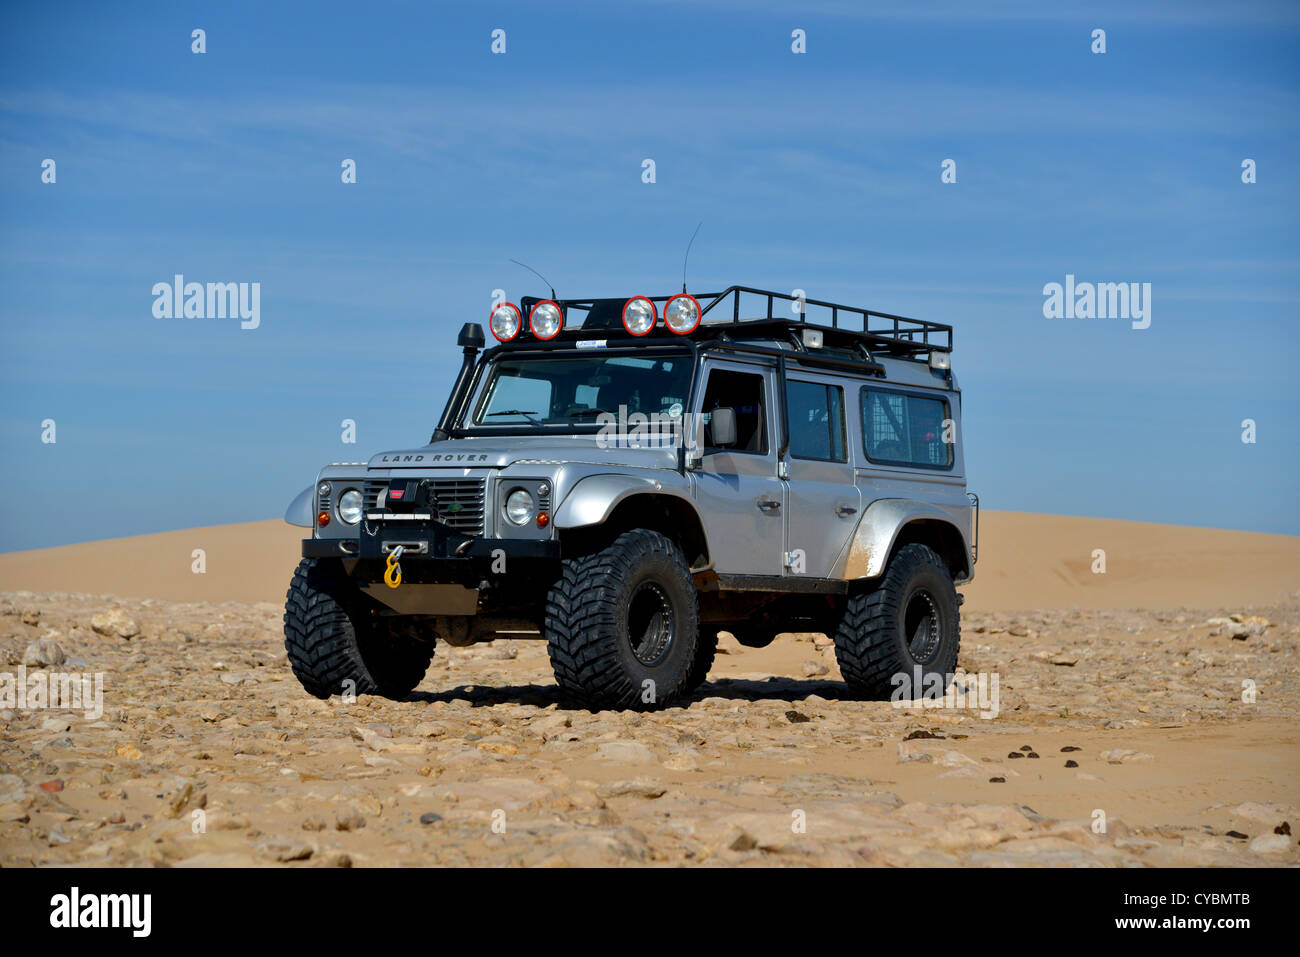 https://c8.alamy.com/compde/cybmtb/off-road-expedition-vorbereitet-2012-land-rover-defender-110-mit-ballonreifen-winde-uberrollkafig-scheinwerfer-auf-sand-in-marokko-cybmtb.jpg